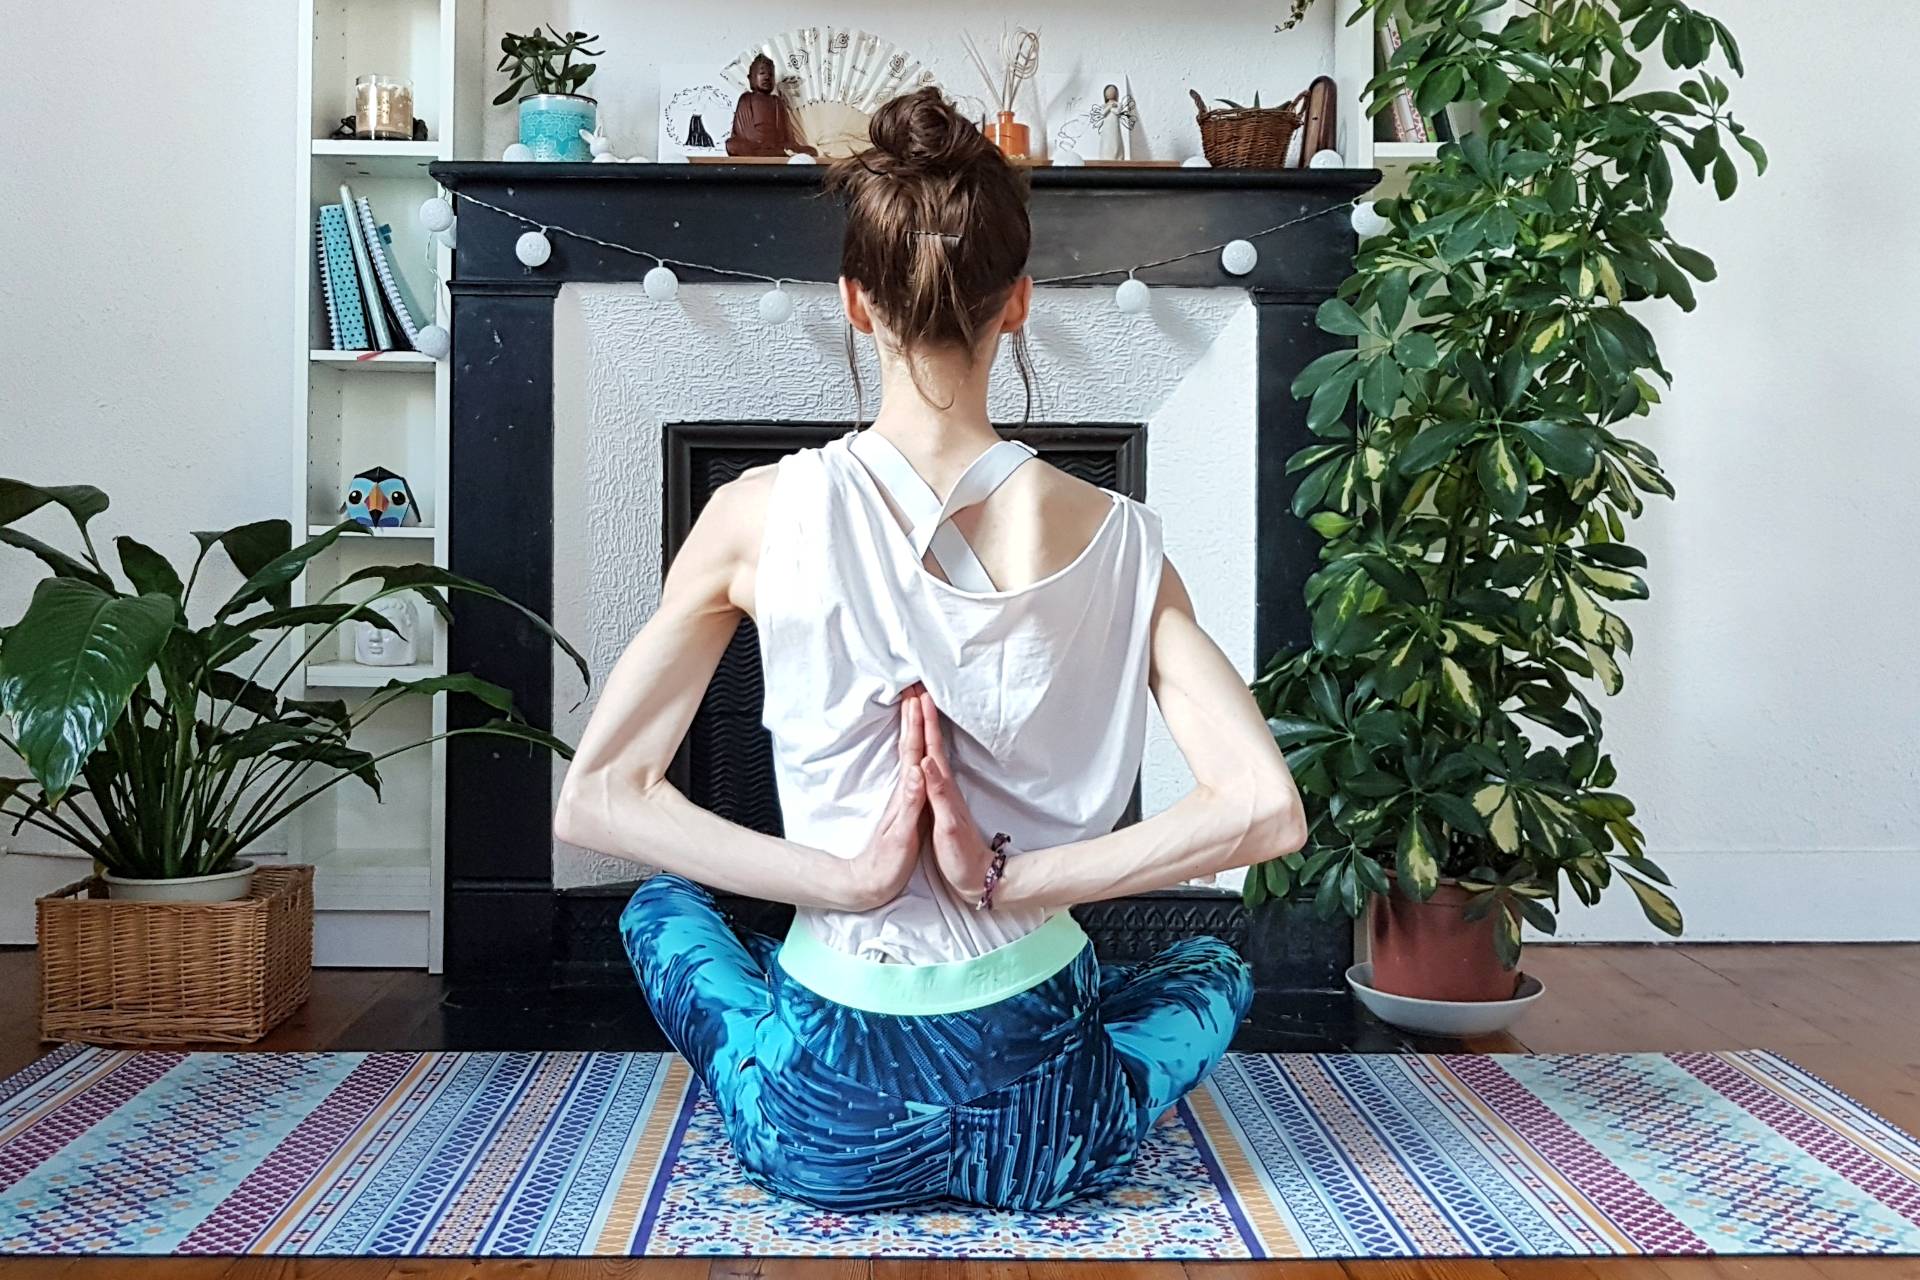 Faire du yoga chez soi pour retrouver son intimité - Pratiquer le yoga chez soi